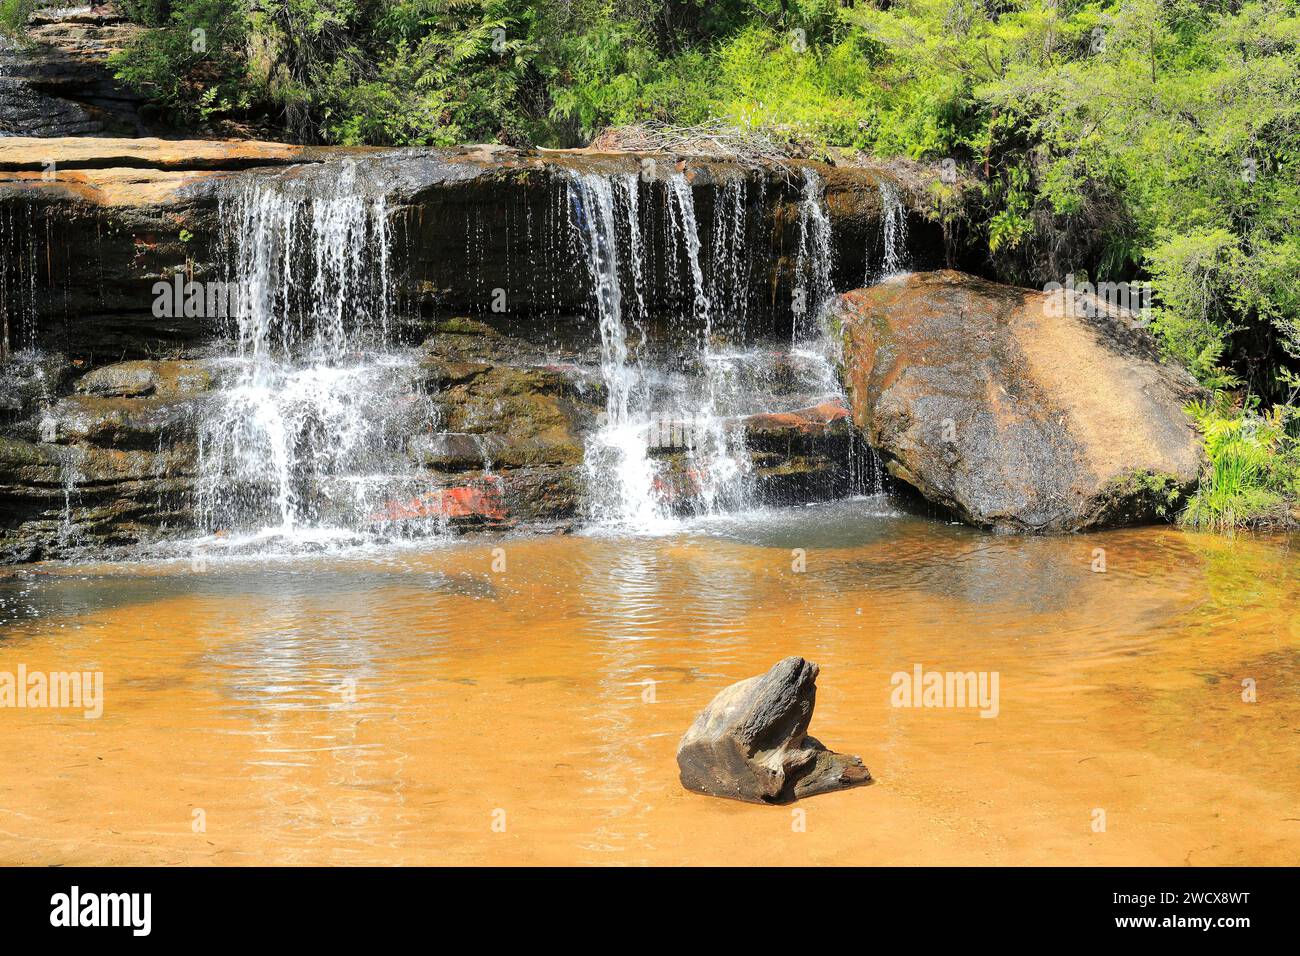 Australia, nuovo Galles del Sud, Blue Mountains dichiarate Patrimonio dell'Umanità dall'UNESCO, Blue Mountains National Park, Katoomba, Wentworth Falls, cascata Foto Stock